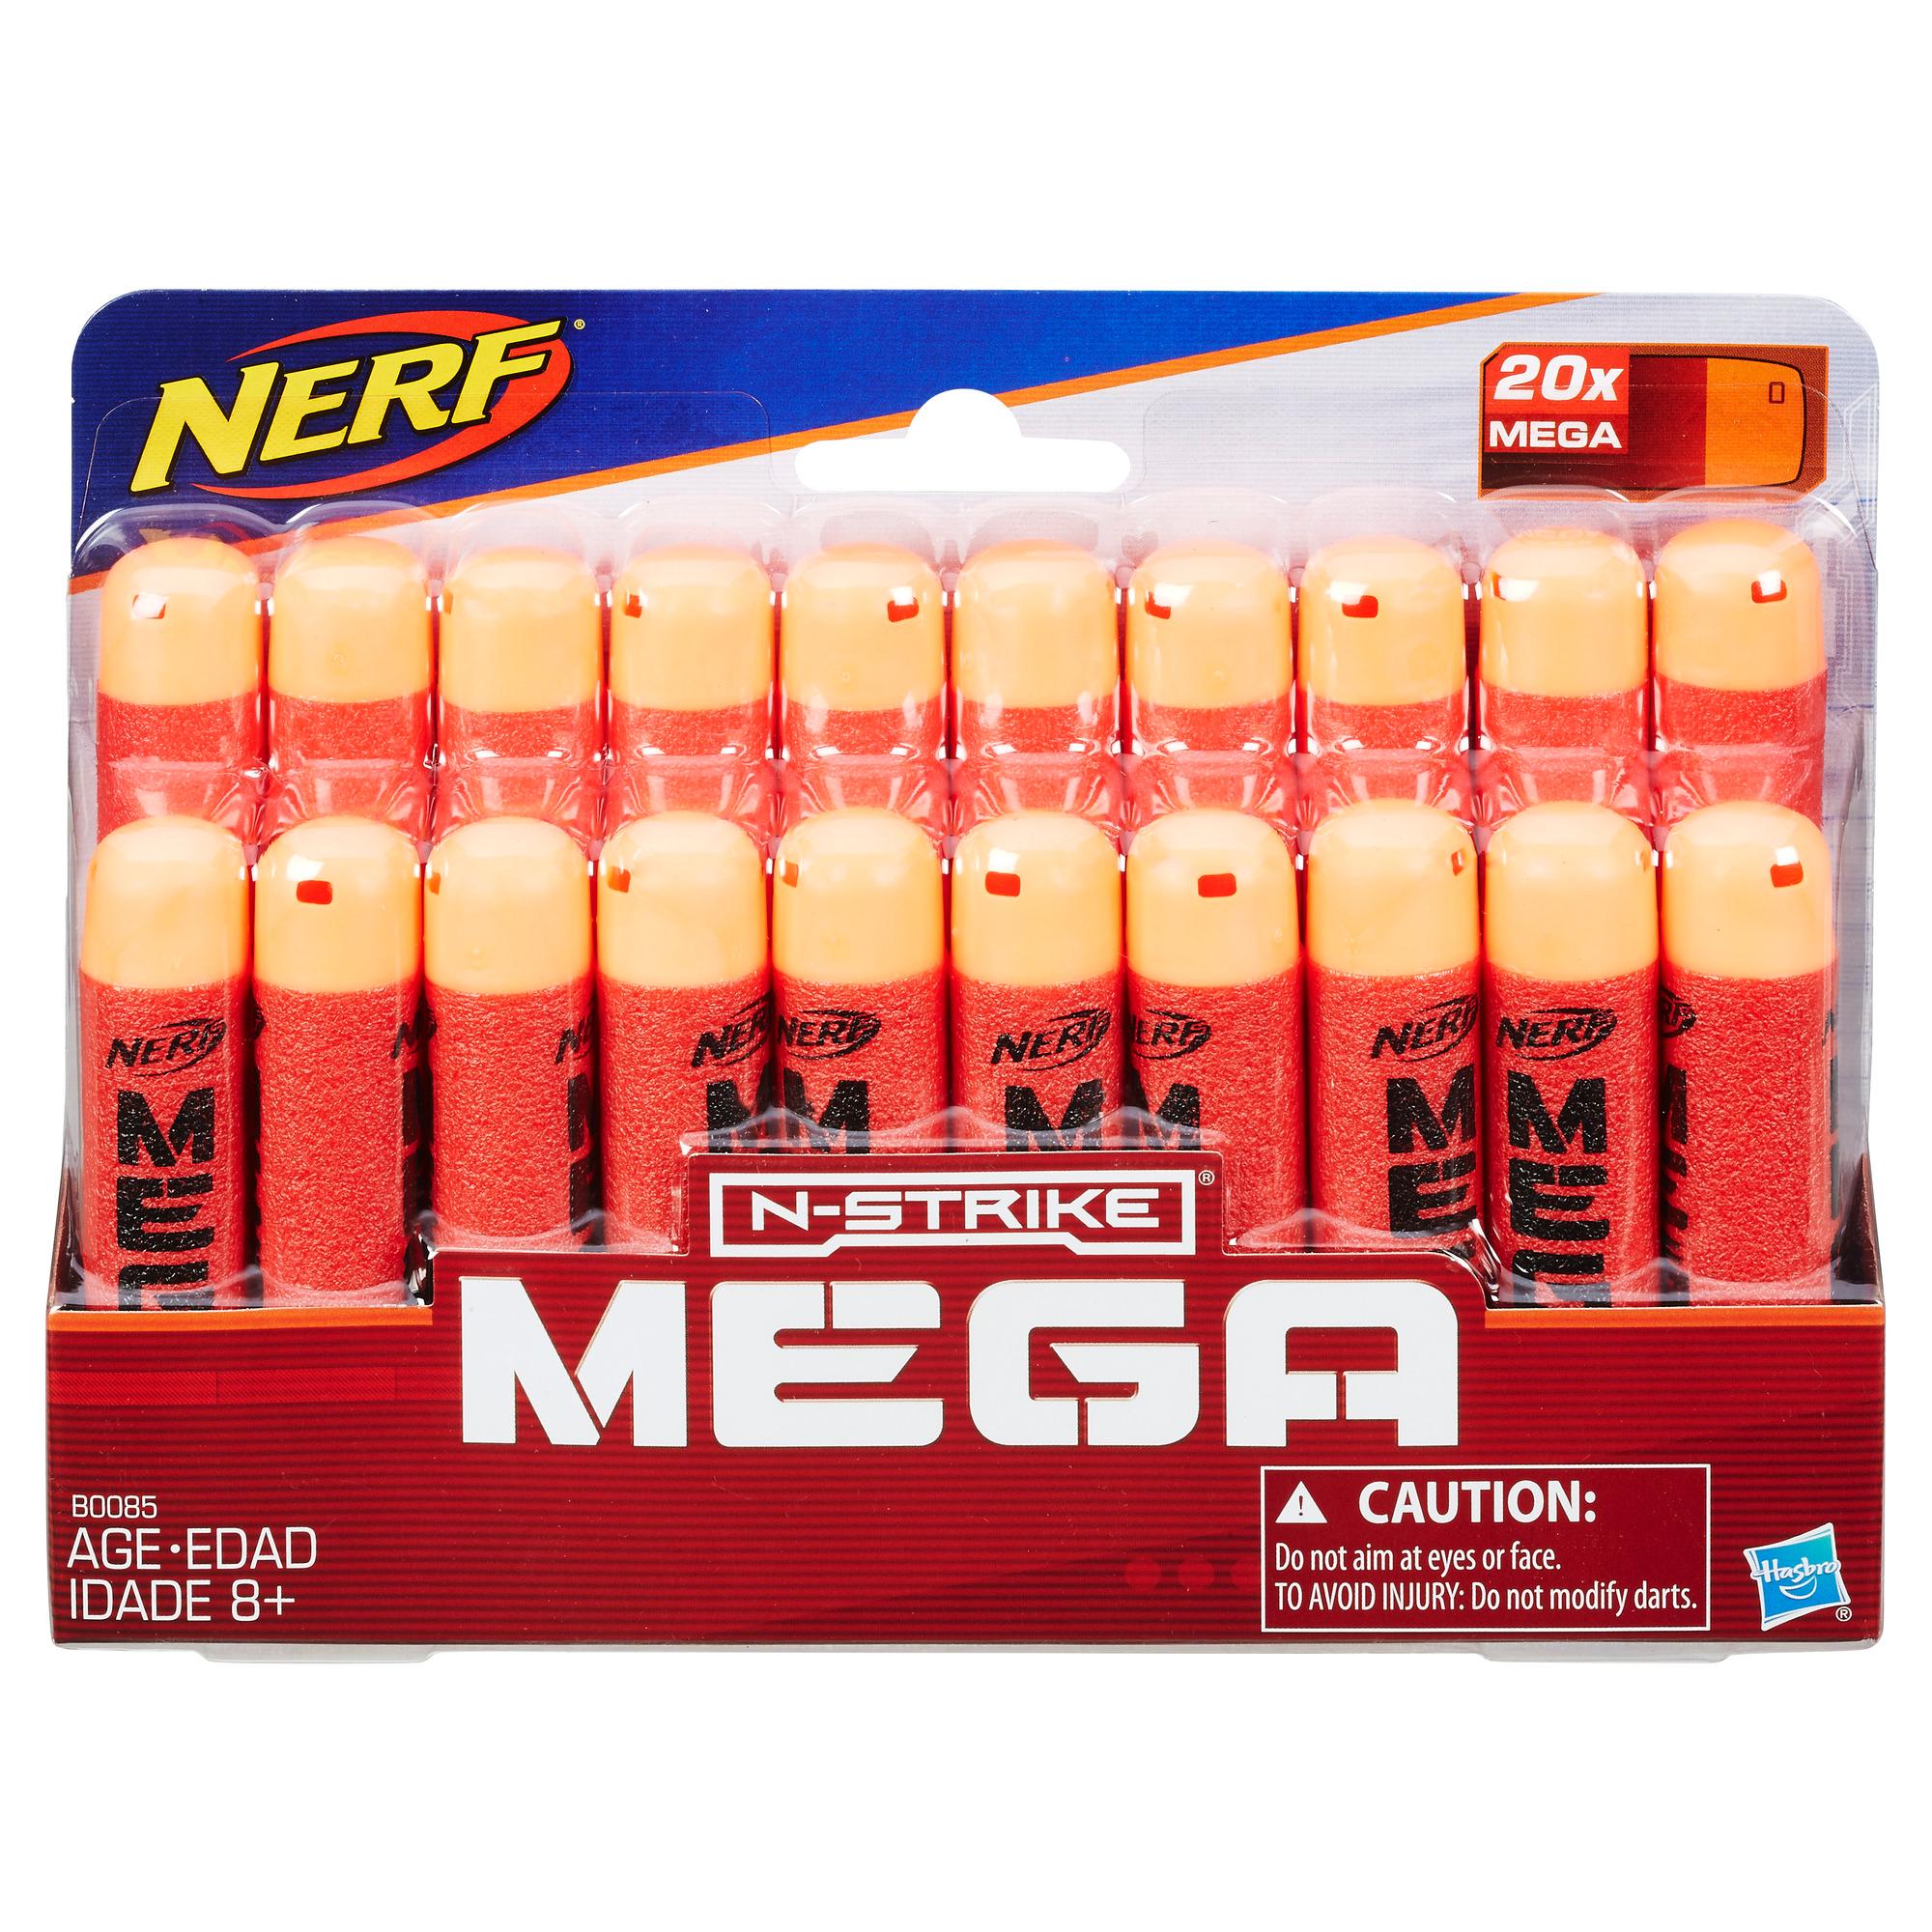 Nerf Official 20 Dart Mega Refill Pack for Nerf N-Strike Mega AccuStrike Toy Blasters